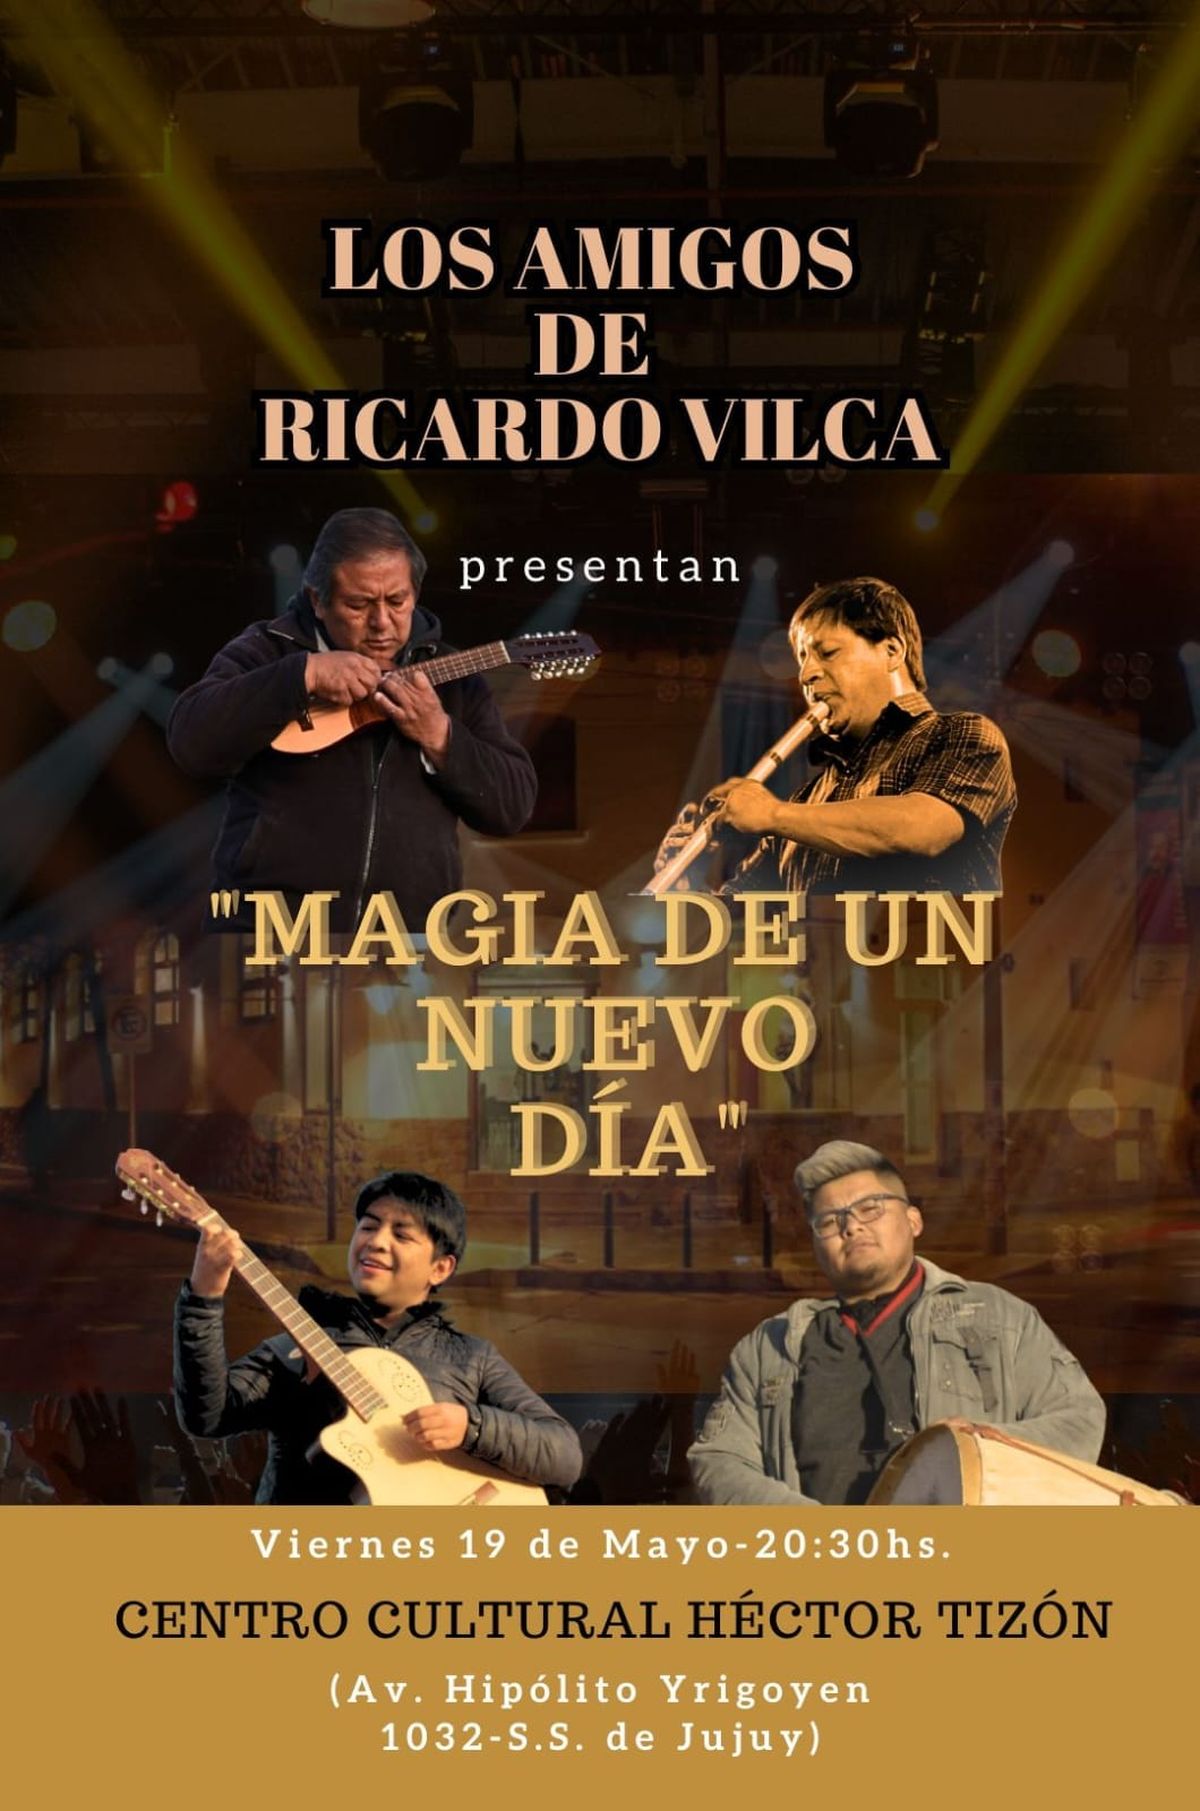 Los Amigos de Ricardo Vilca se presentarán este jueves en el Tizón